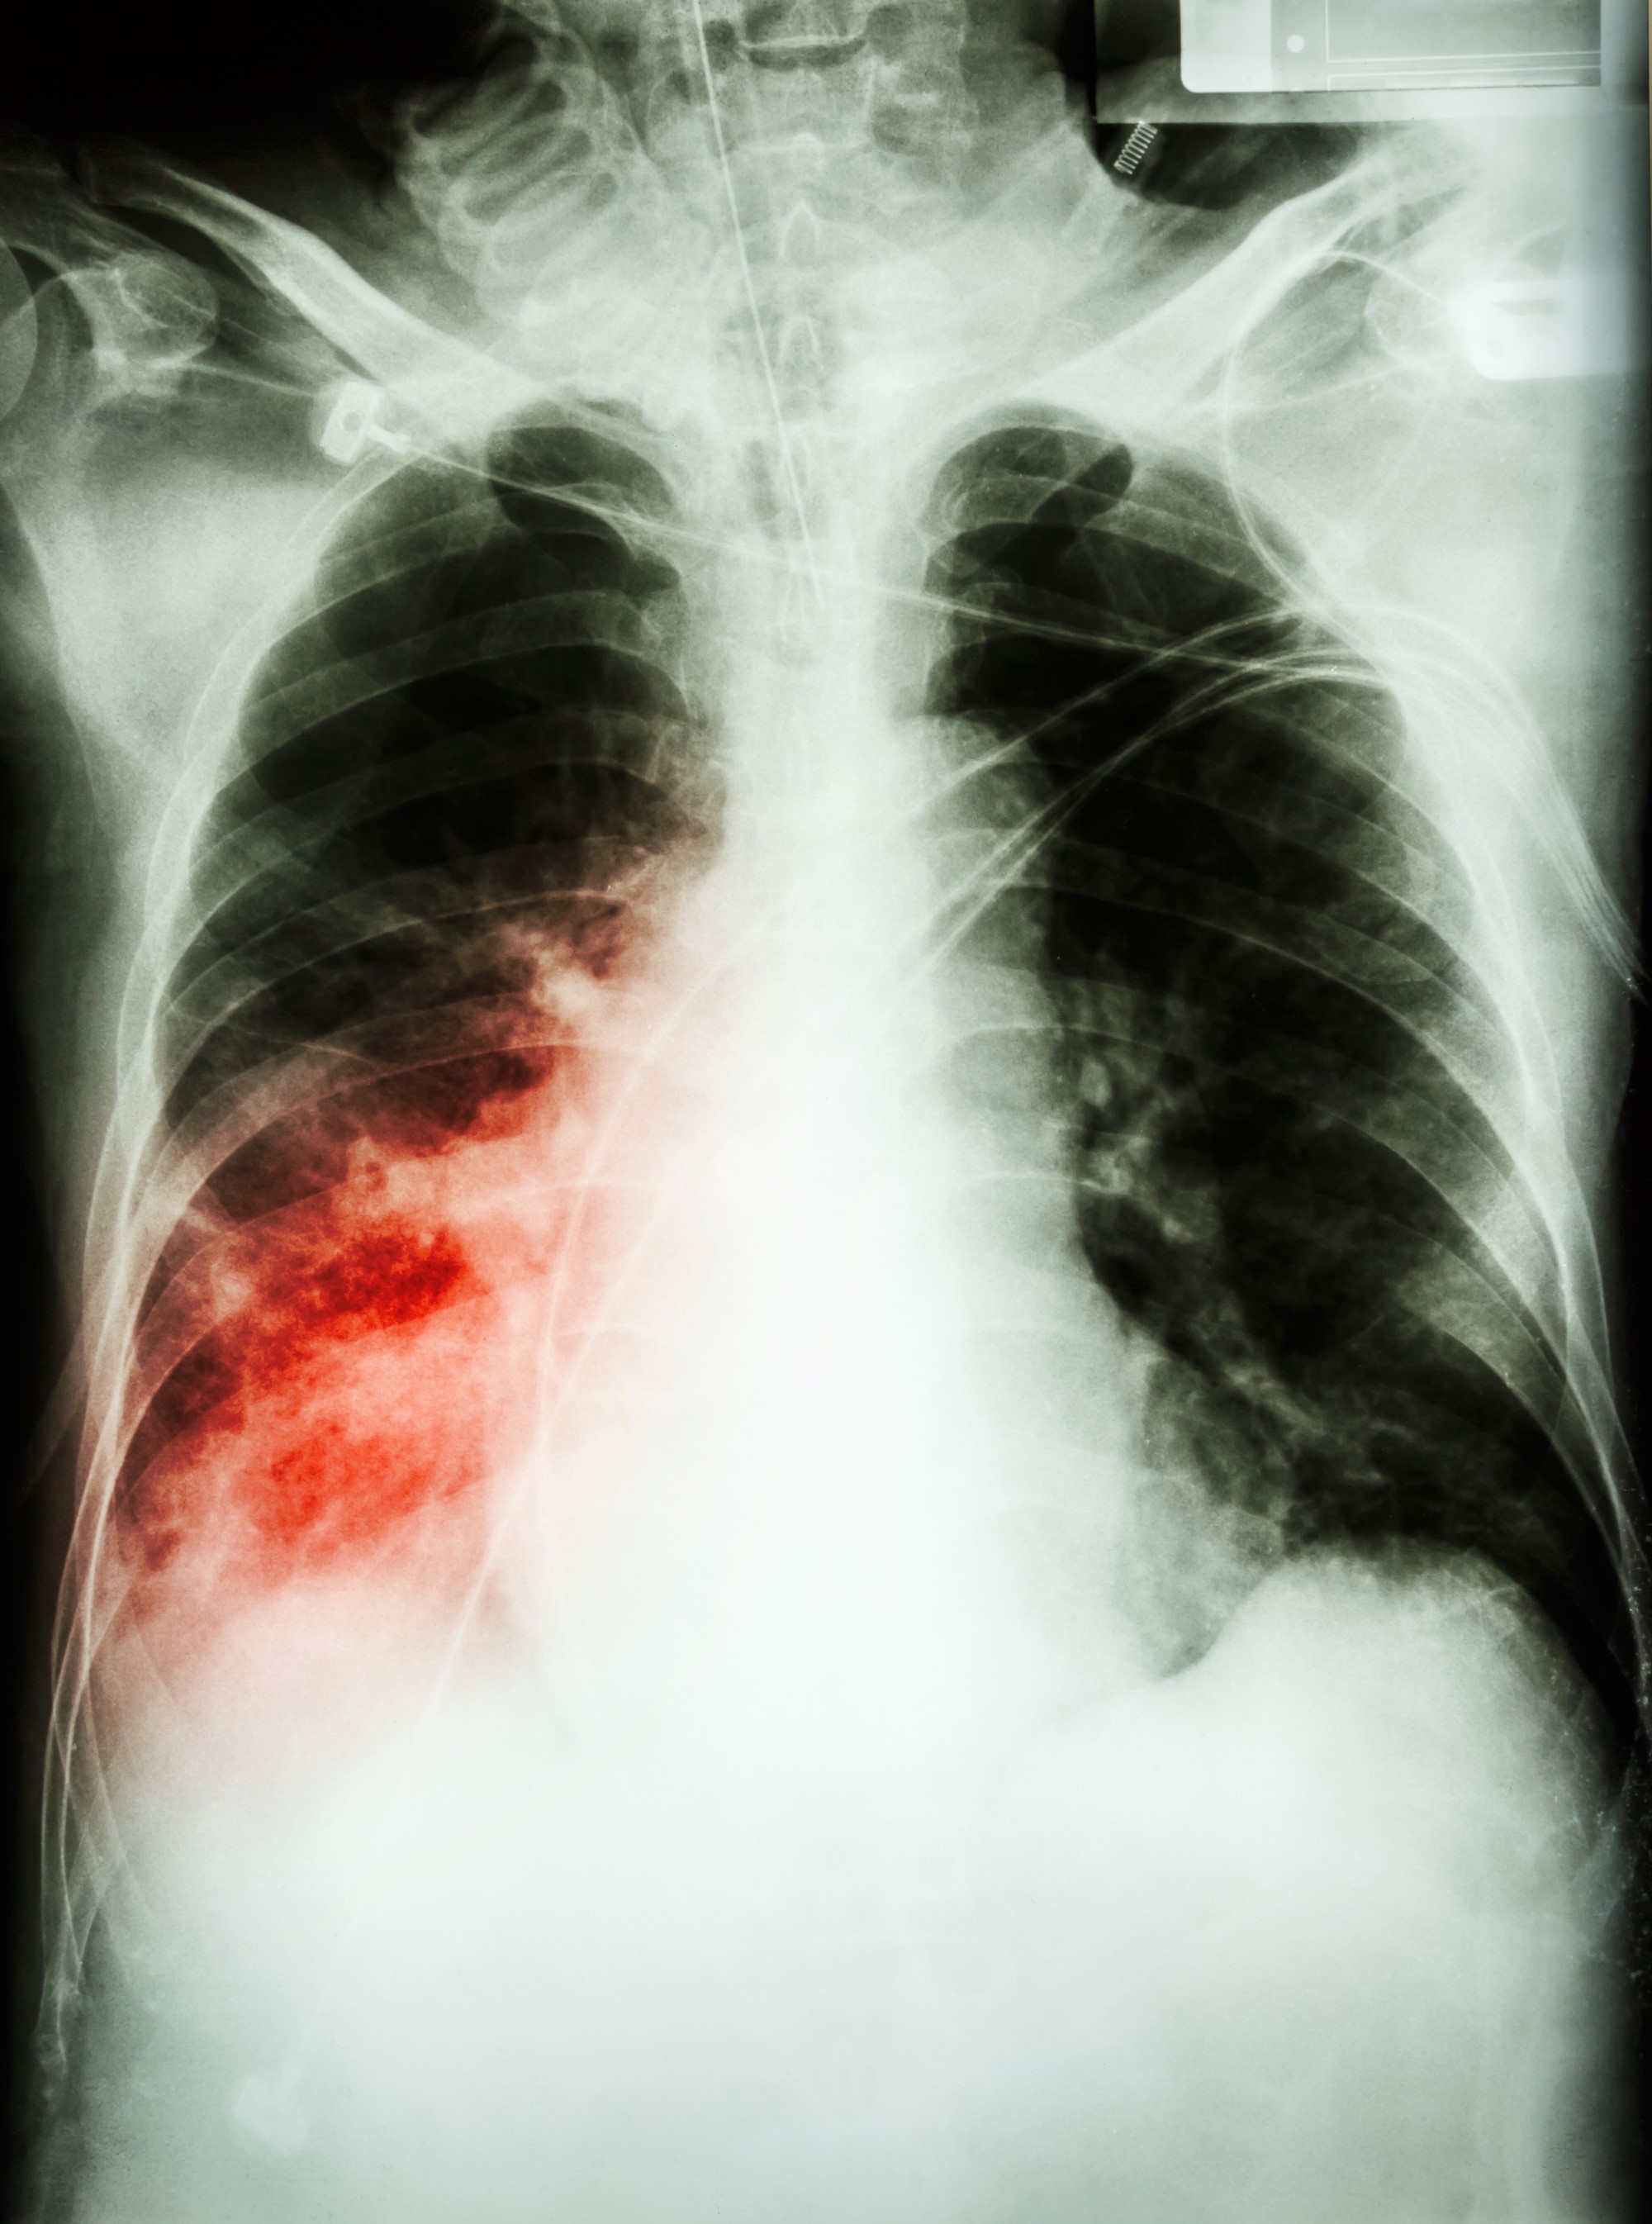 Снимки двухсторонней пневмонии